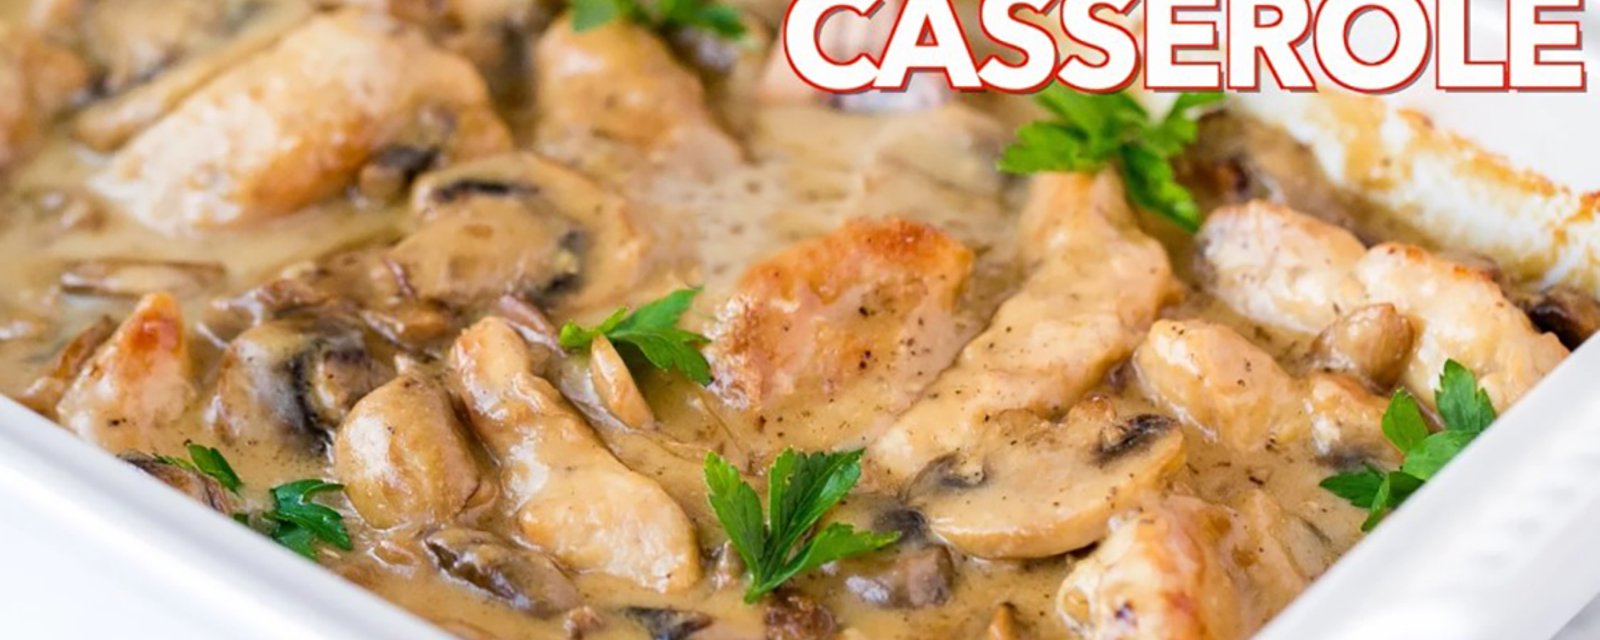 Cette casserole classique et crémeuse réunit le poulet et les champignons pour un repas que vous n'oublierez jamais!